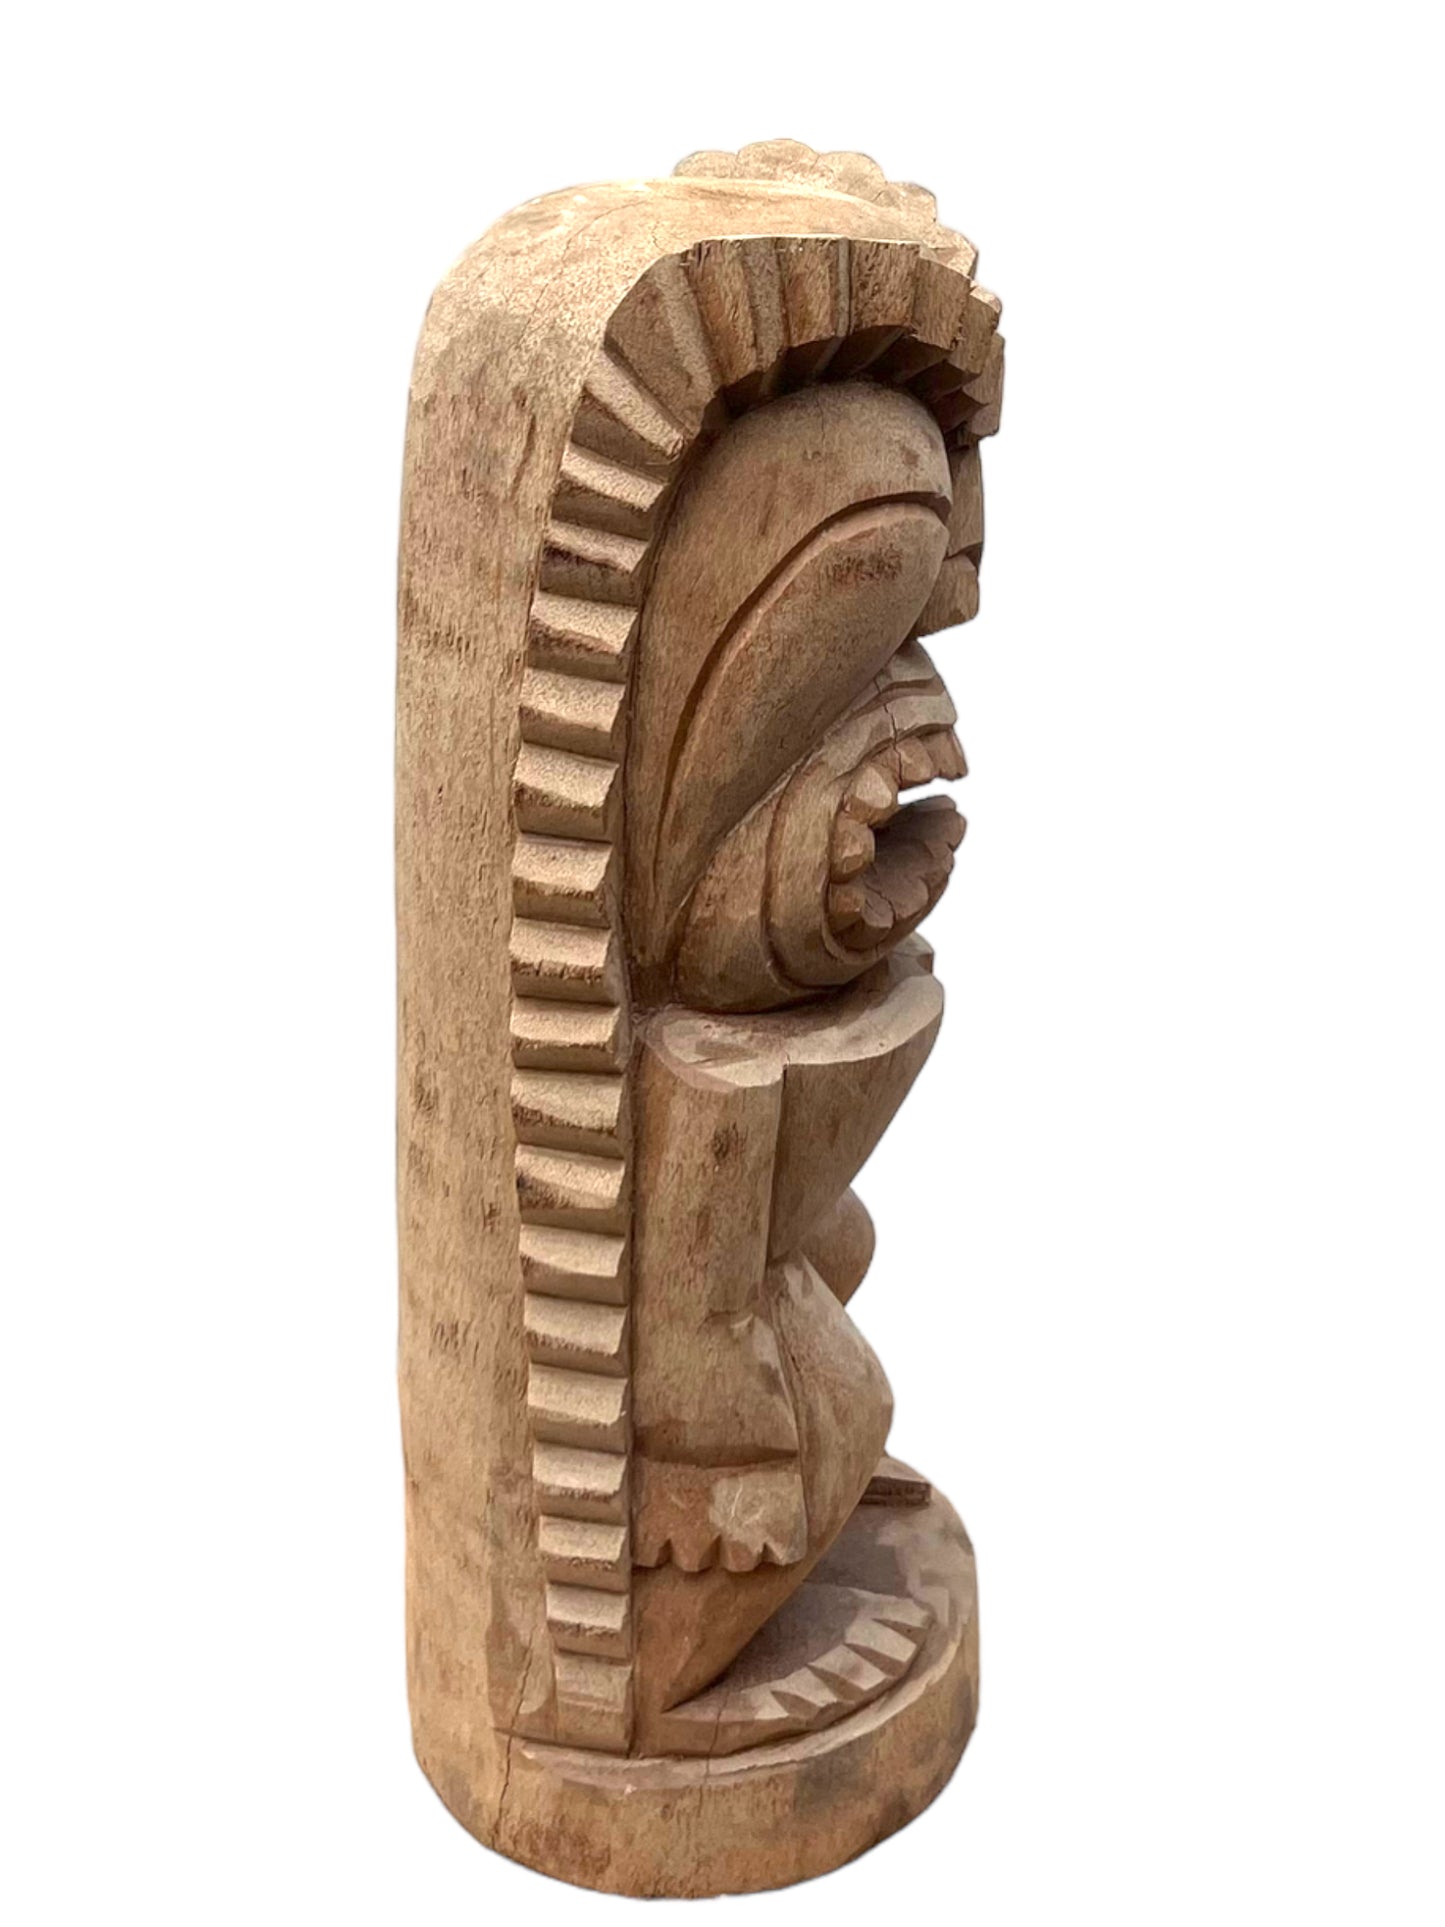 Tiki Figur - Garten Innenbereich Deko - Handgeschnitzte Exotische Skulptur - Palmen Holz - 50x19x19 cm